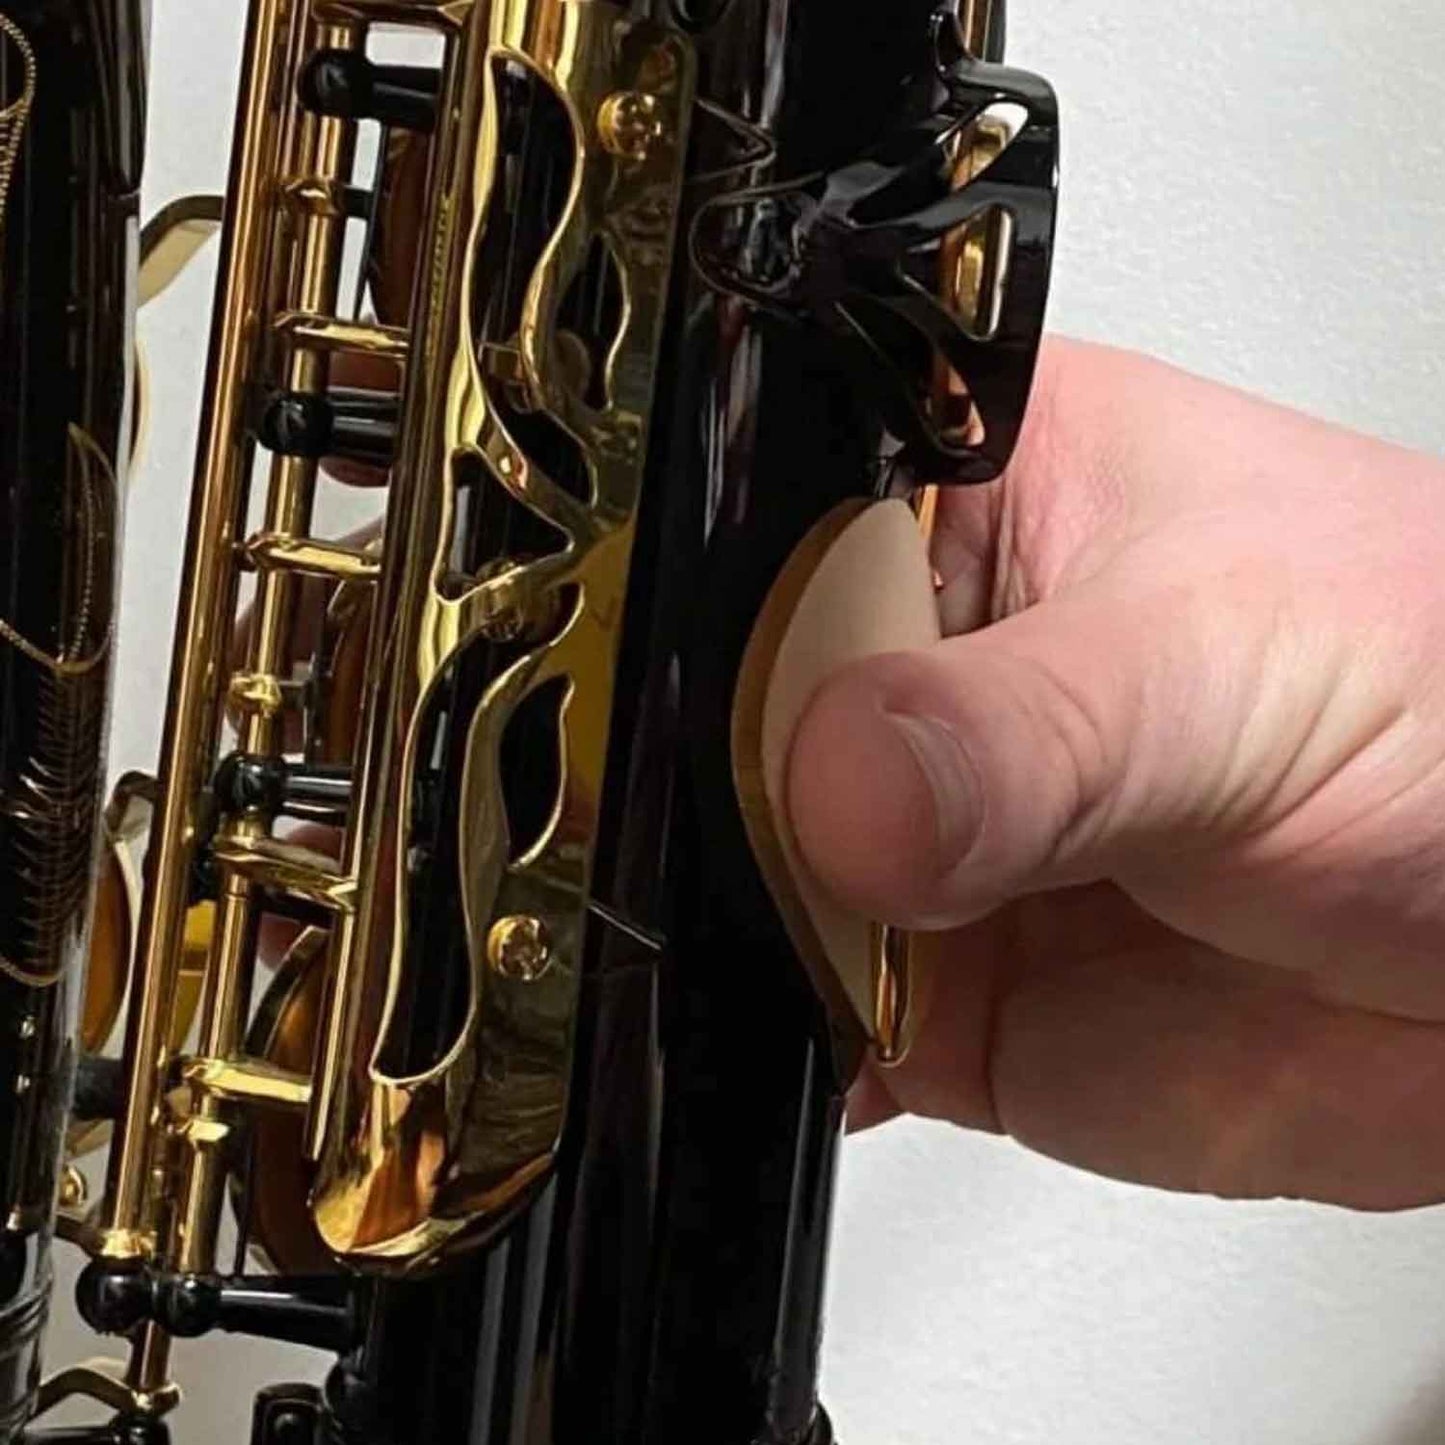 RULON Ergonomic Saxophone Thumb Rest - Black Plastic